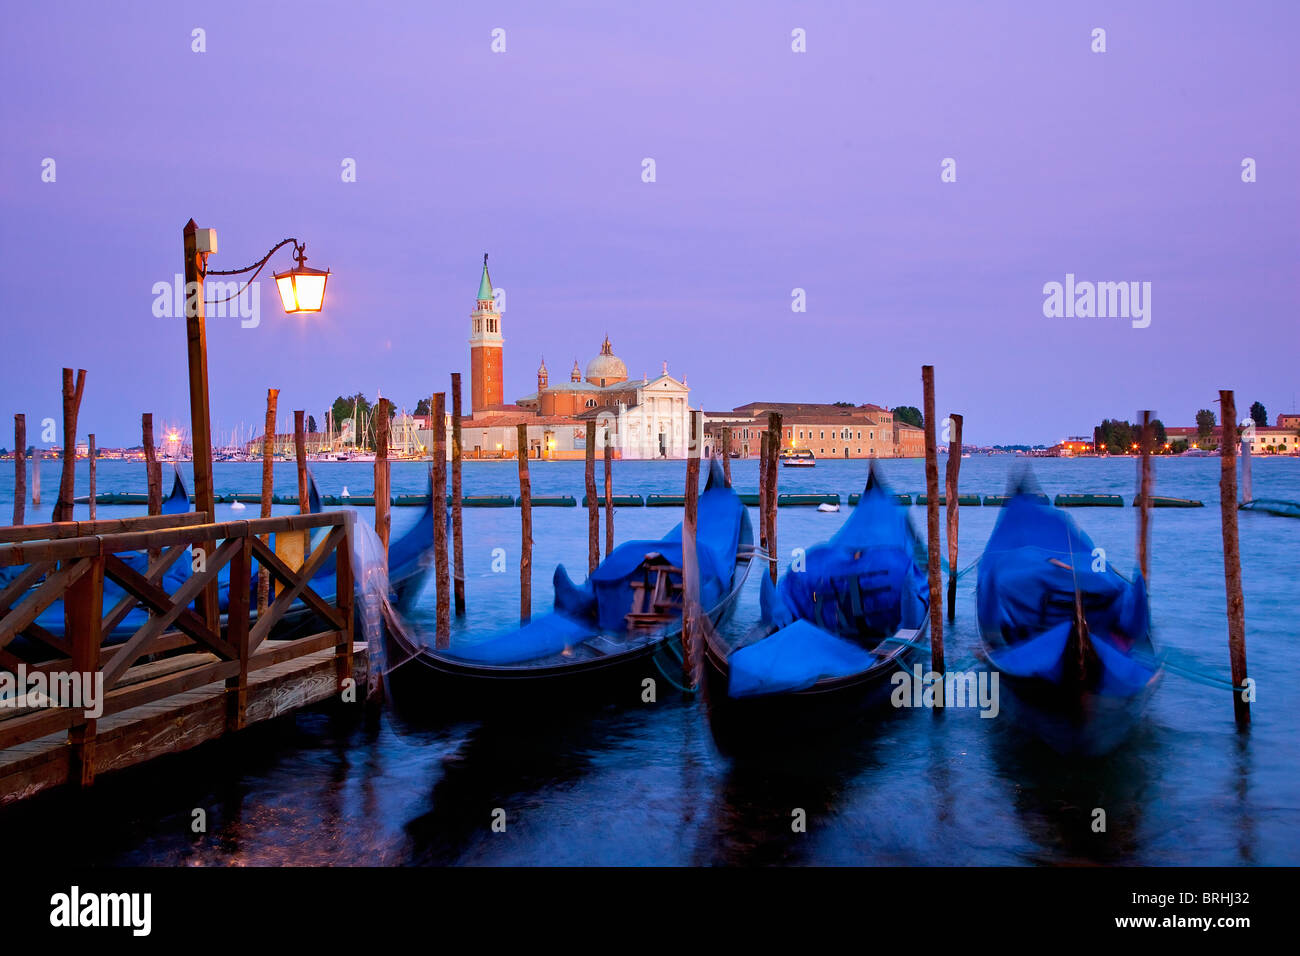 Europa, Italien, Venezia, Venedig, aufgeführt als Weltkulturerbe der UNESCO, Blick auf die Insel San Giorgio von San Marco Stockfoto